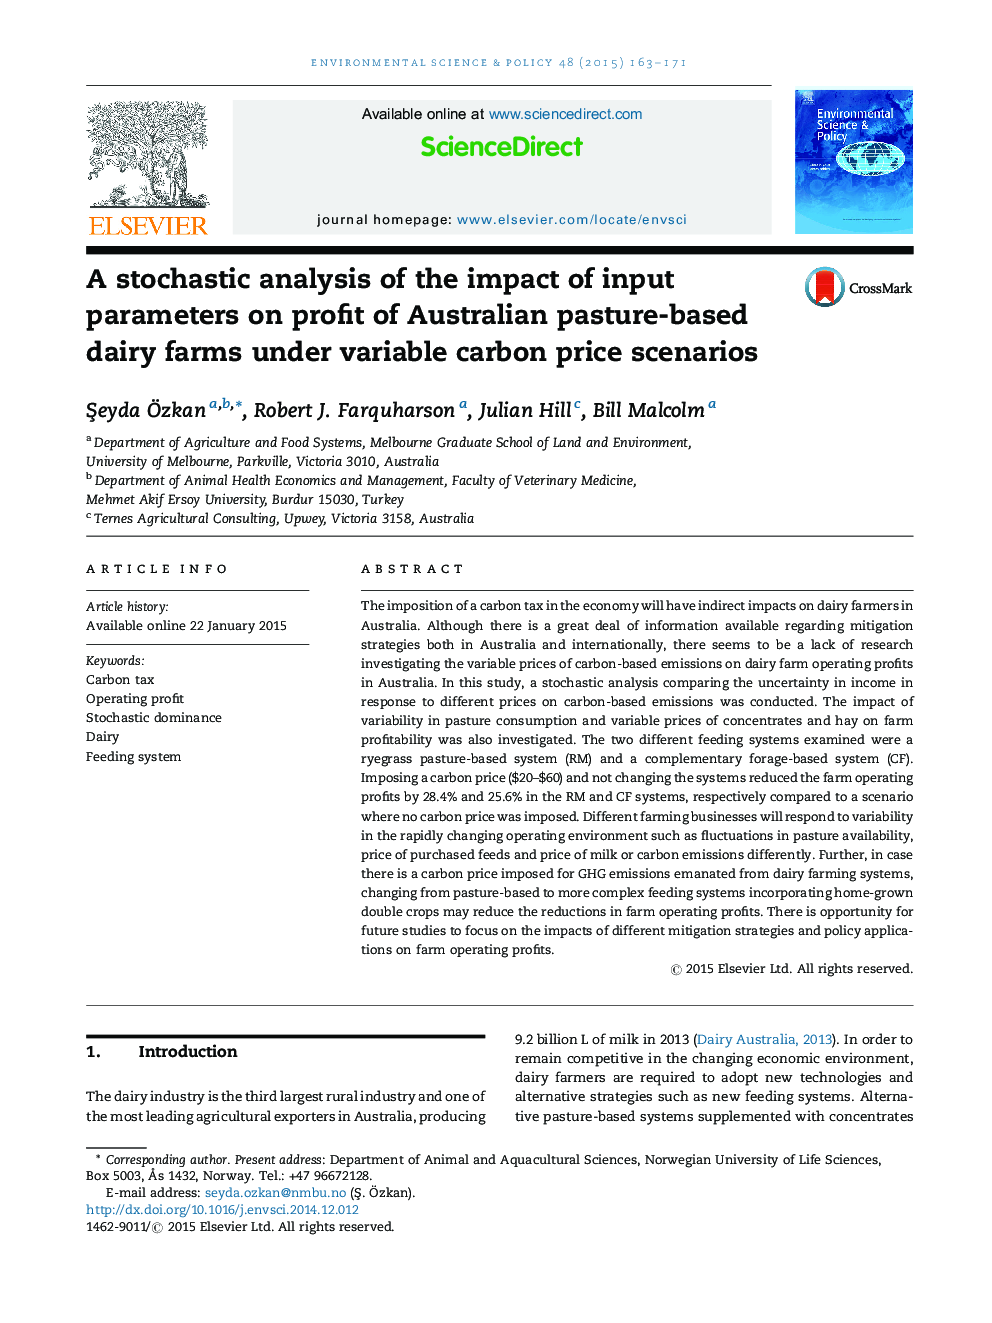 تجزیه و تحلیل تصادفی از تاثیر پارامترهای ورودی بر سود مزارع لبنی مبتنی بر مرتع در استرالیا در سناریوهای قیمت متغیر کربن متغیر 